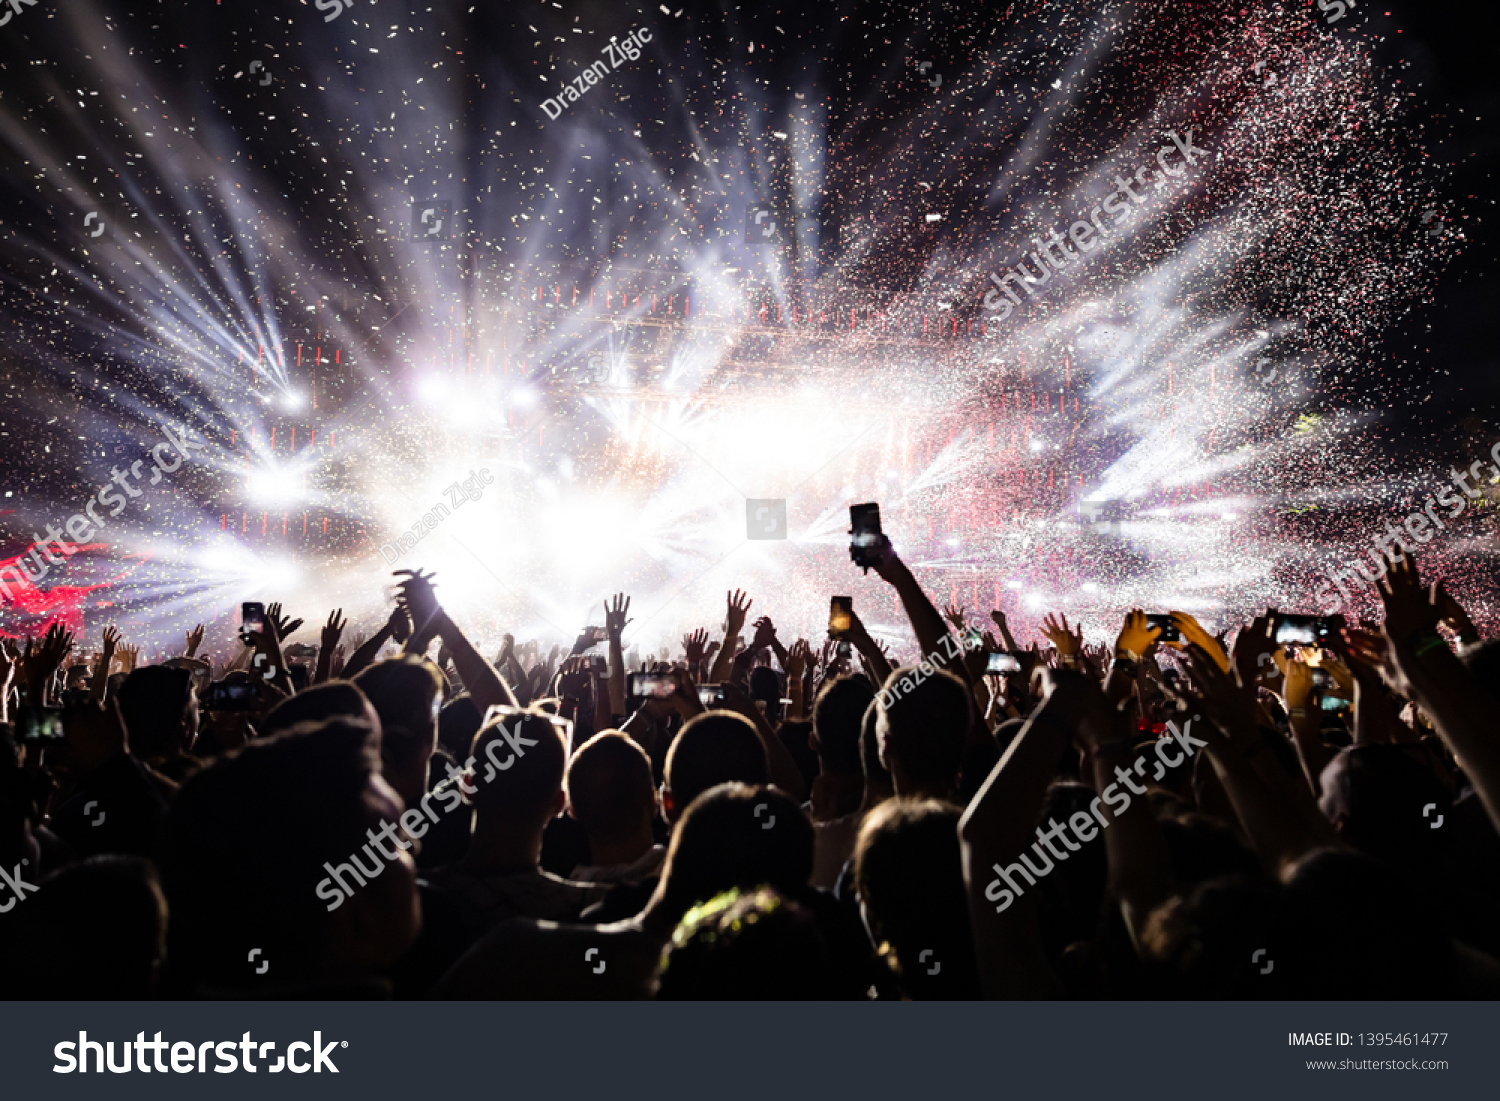 11,719 Watching concert Images, Stock Photos & Vectors | Shutterstock